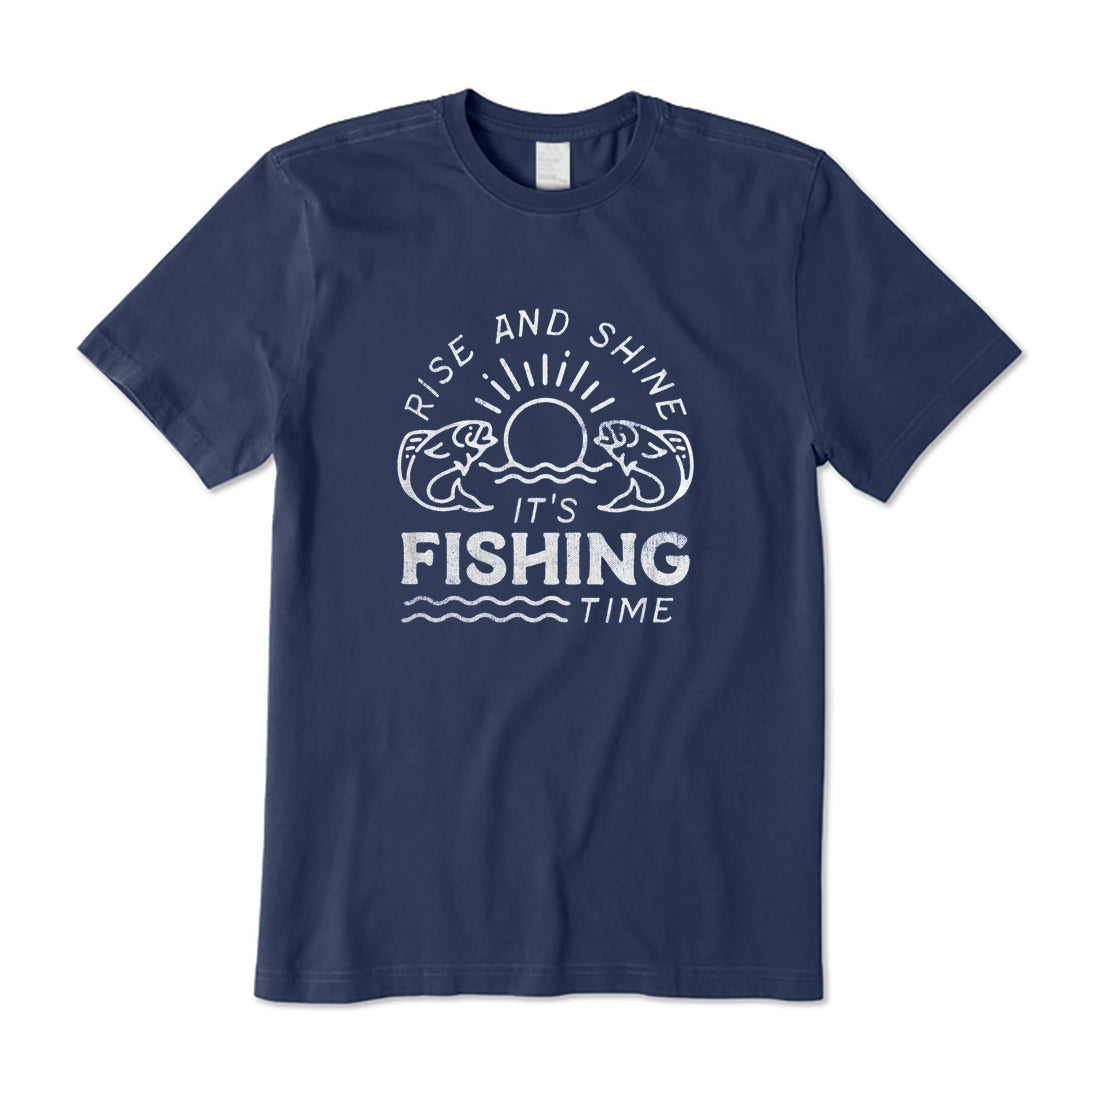 It's Fishing Time T-Shirt